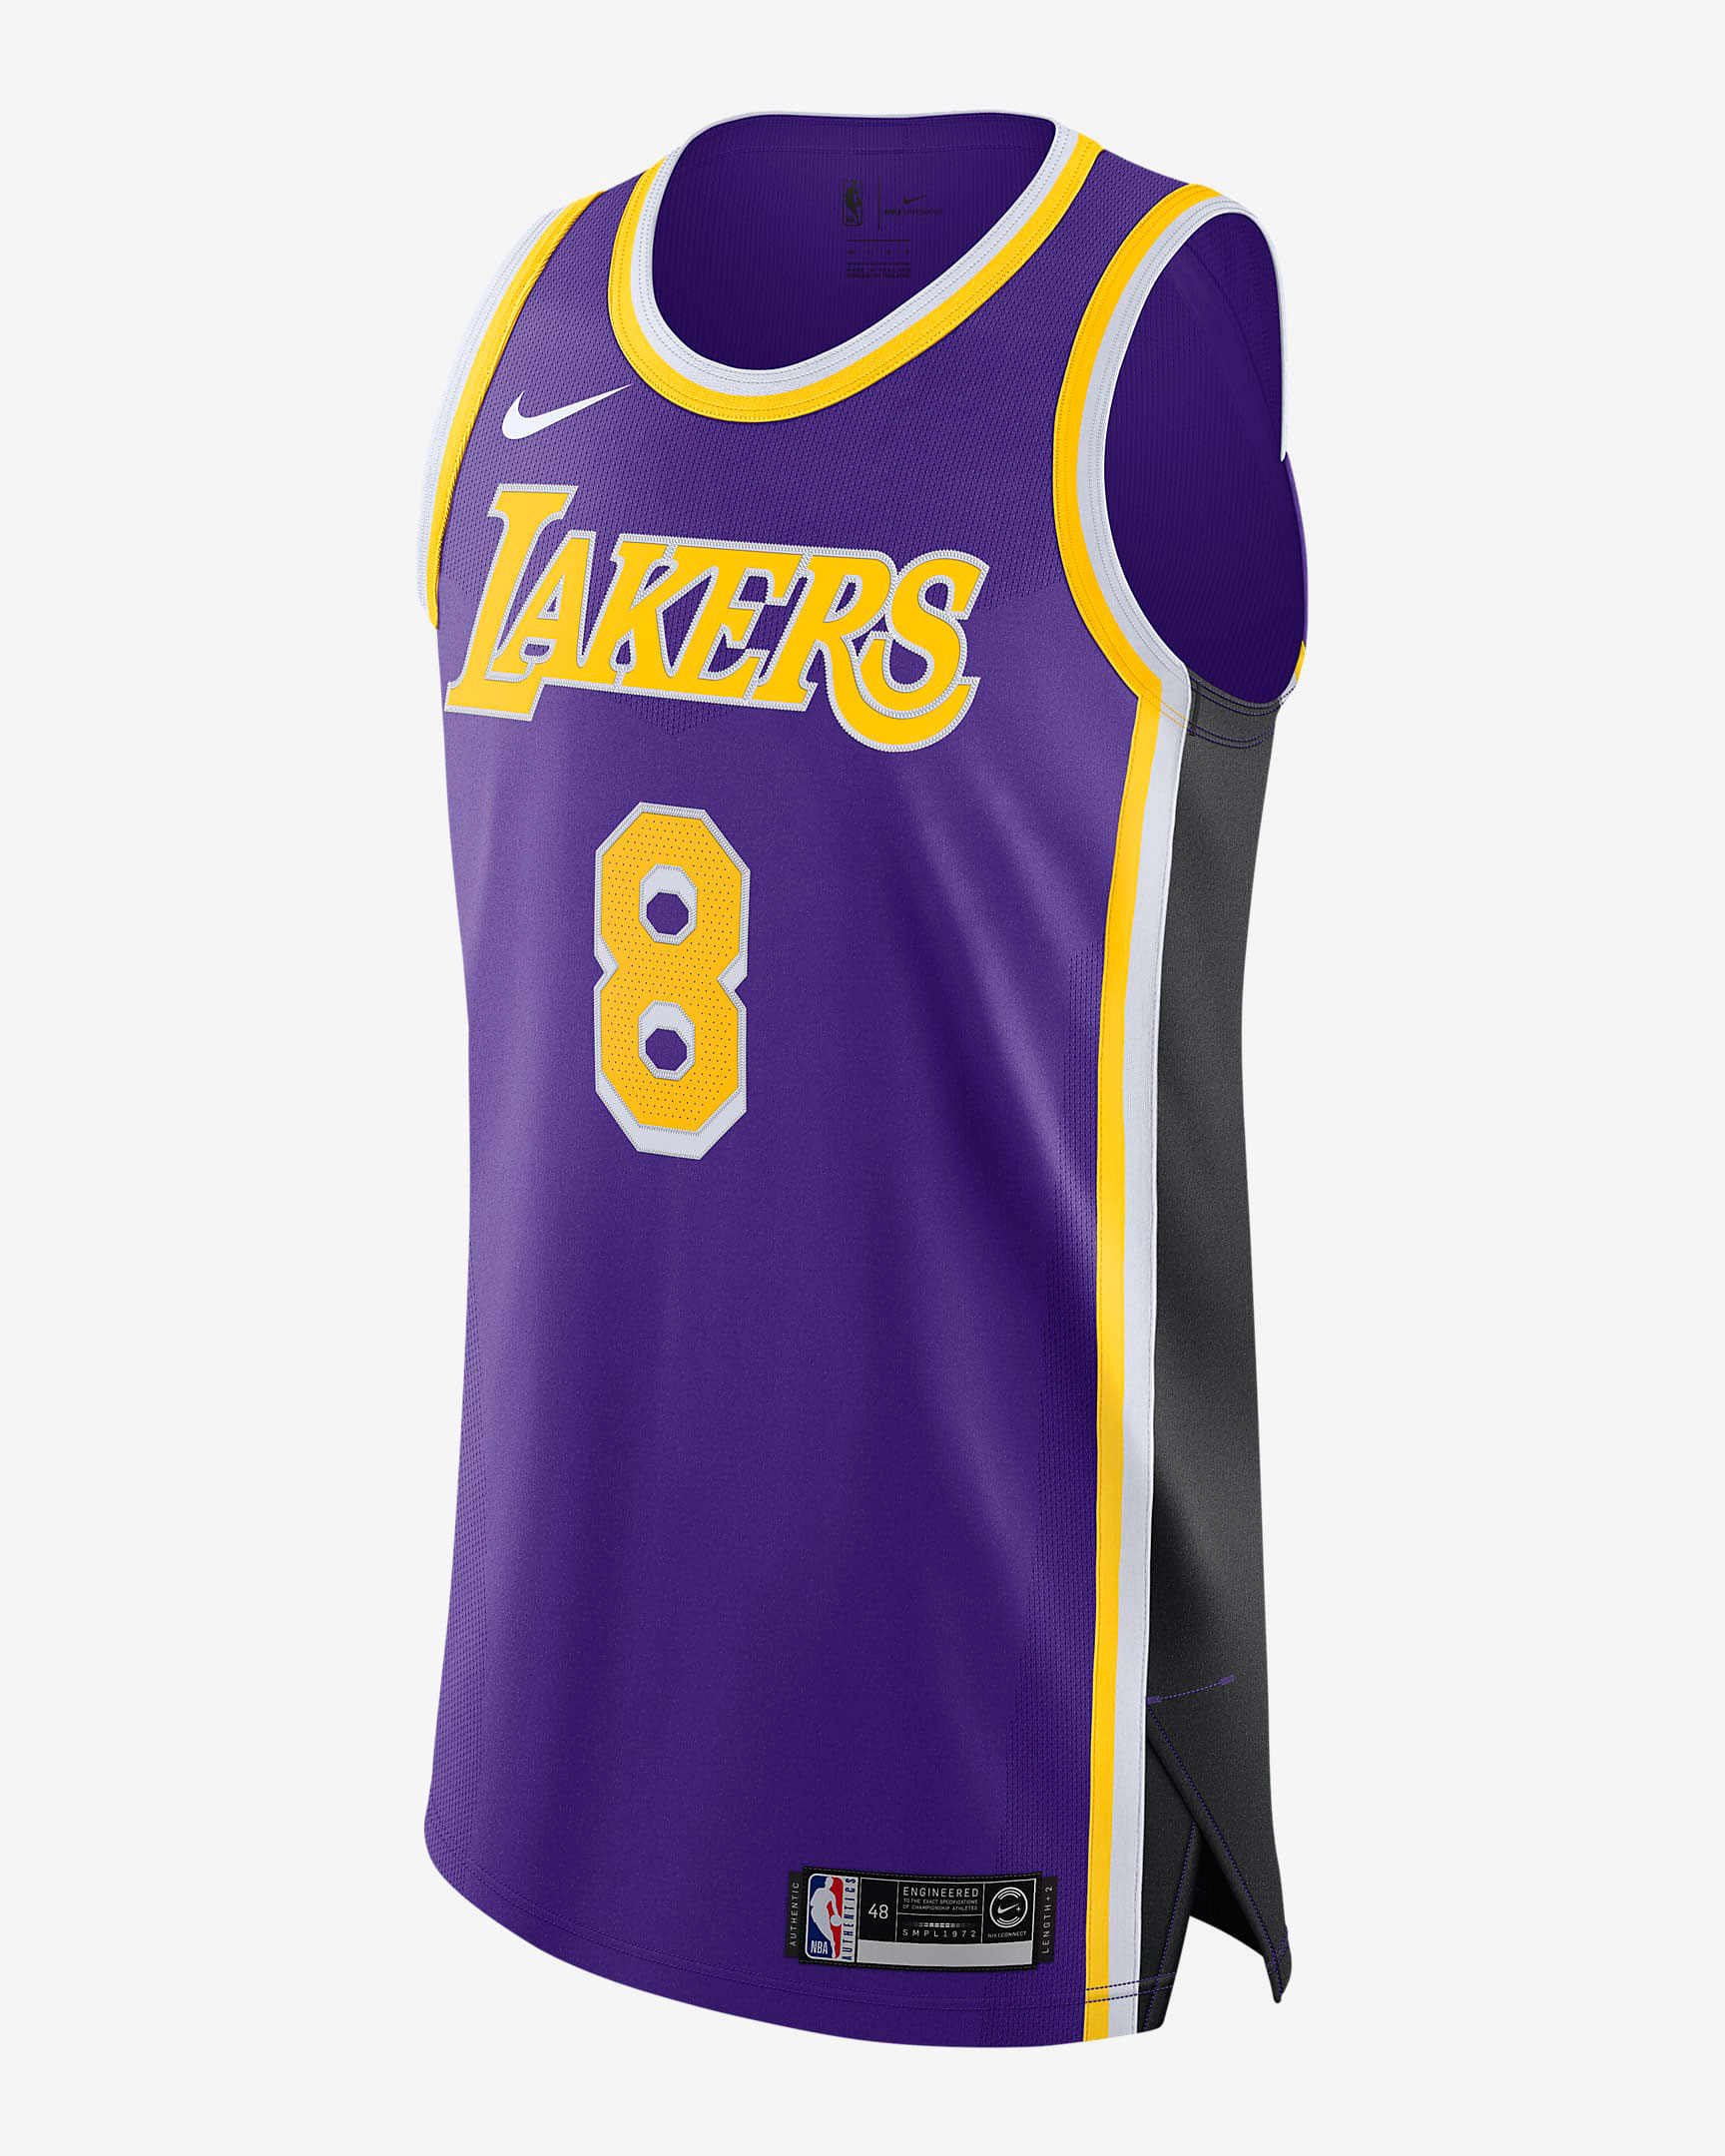 Kobe Bryant Lakers Purple Nike Jersey 